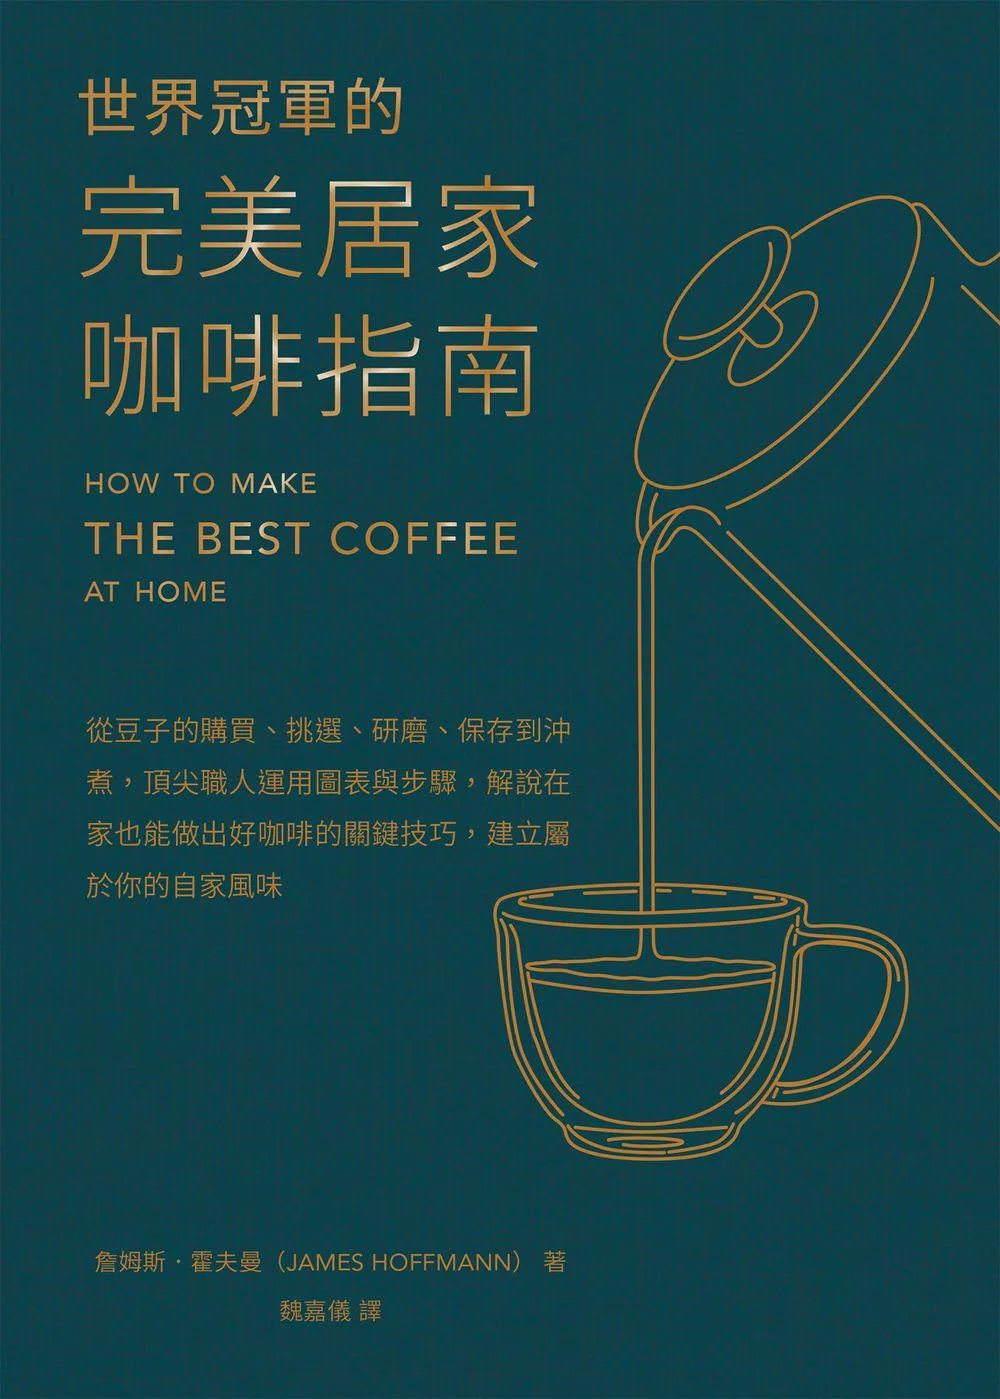 世界冠軍的完美居家咖啡指南──從豆子的購買、挑選、研磨、保存到沖煮，頂尖職人運用圖表與步驟，解說在家也能做出好咖啡的關鍵技巧，建立屬於你的自家風味 (電子書)